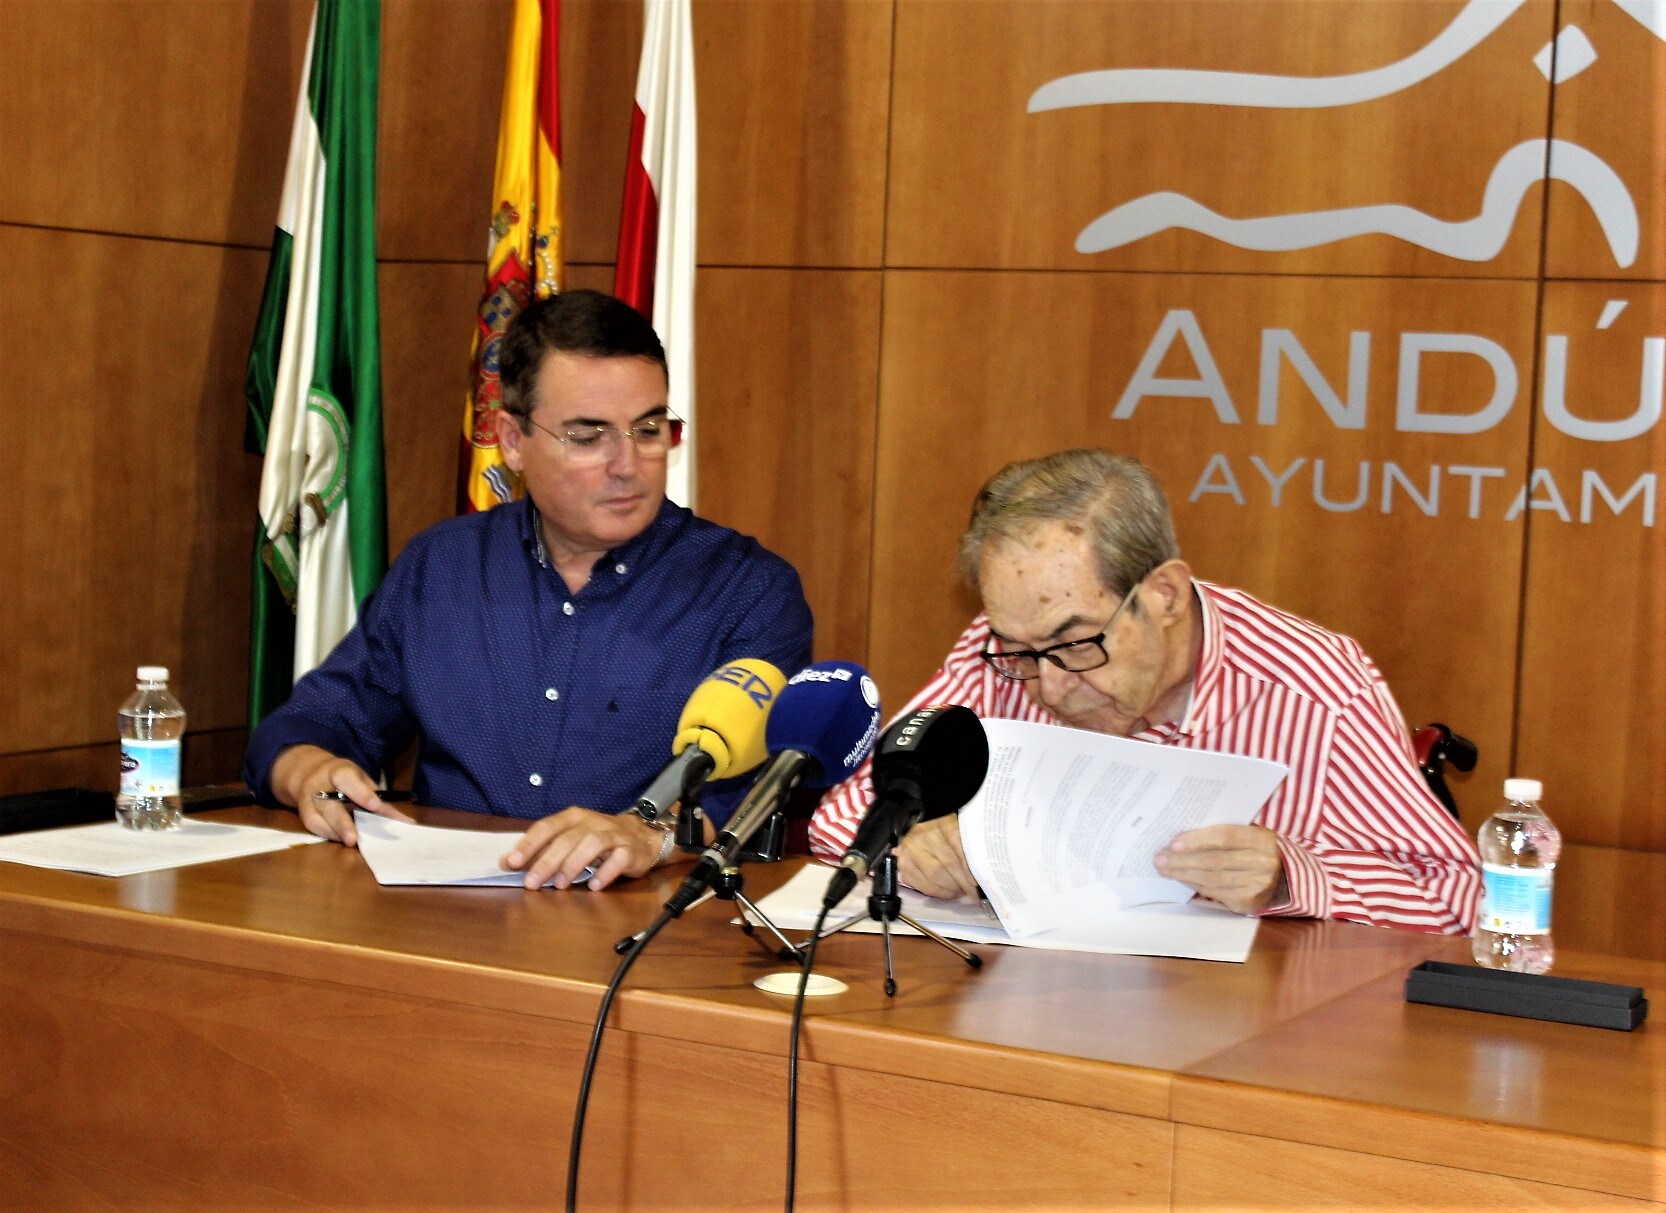 Andúar ratifica su compromiso con el sector comercial y empresarial con la firma de convenios con la Cámara de Comercio